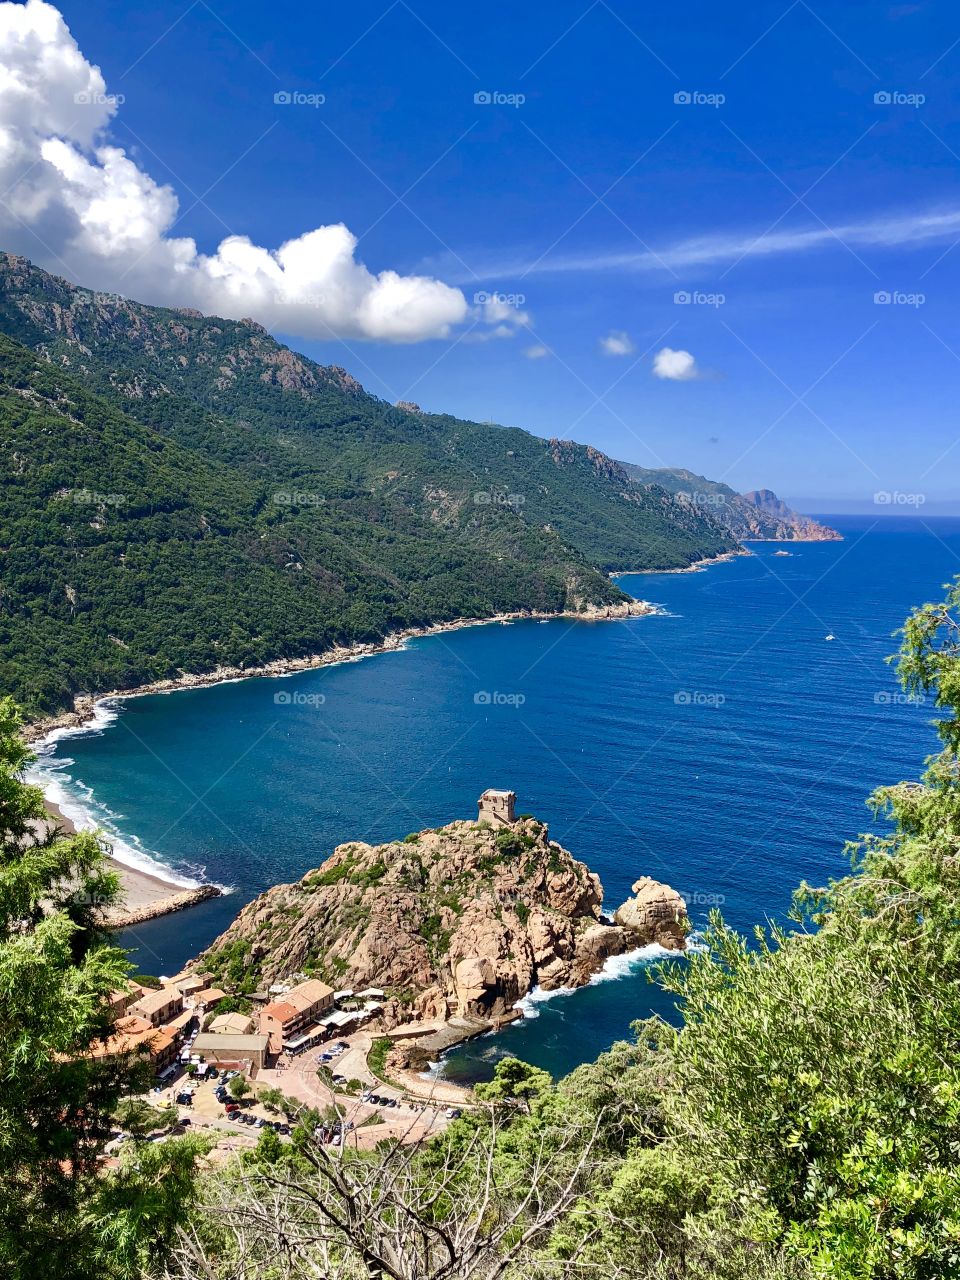 Corsica’s Landscape : La tour génoise de Porto.